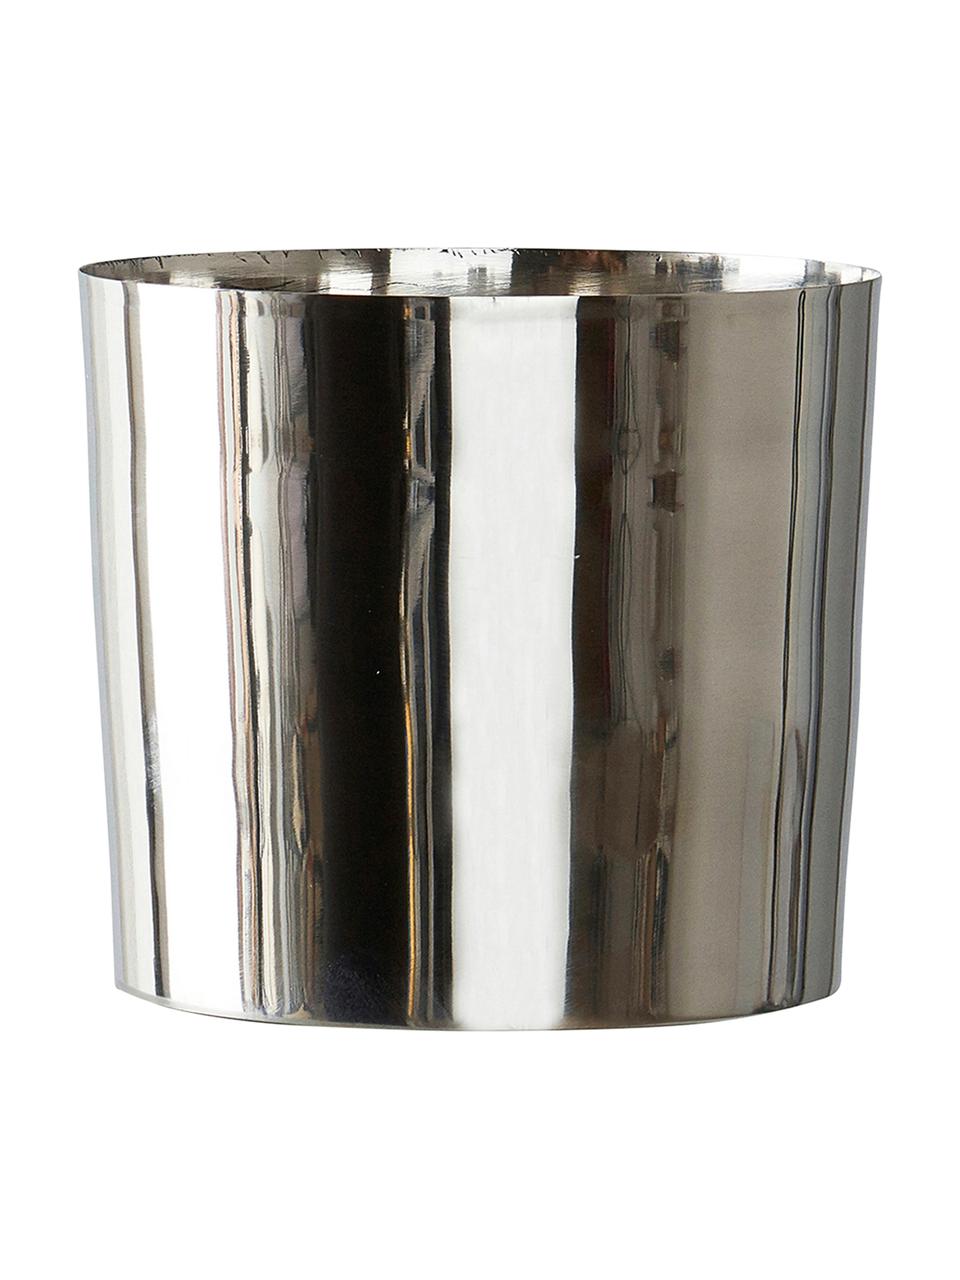 Kleiner Übertopf Gunnebo in Silber, Metall, beschichtet, Silberfarben, Ø 14 x H 13 cm